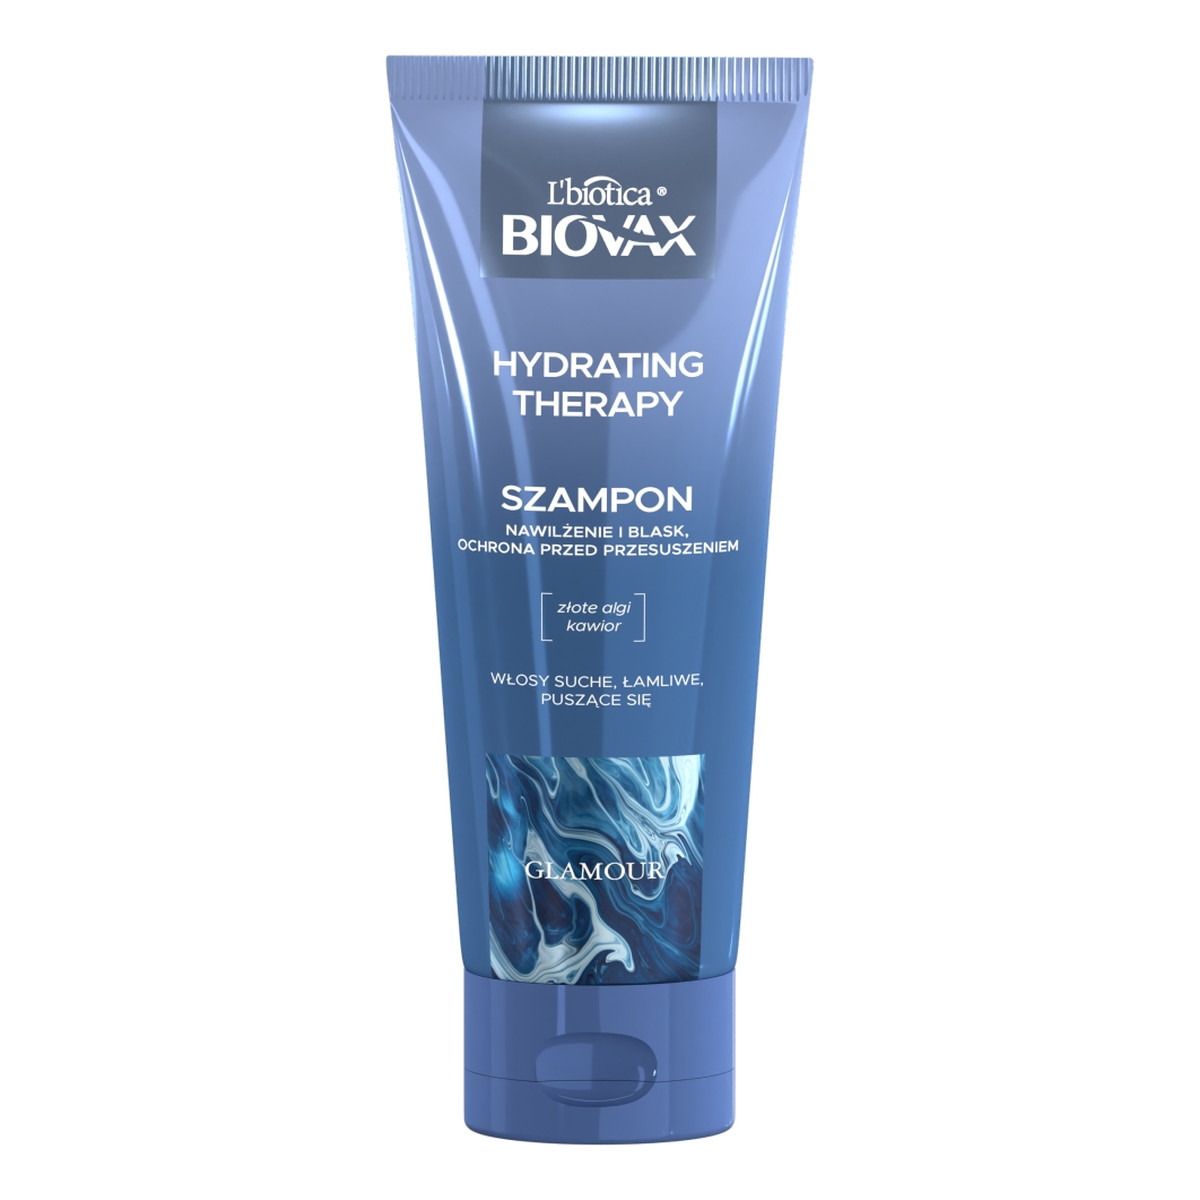 Biovax Glamour hydrating therapy nawilżający szampon do włosów 200ml